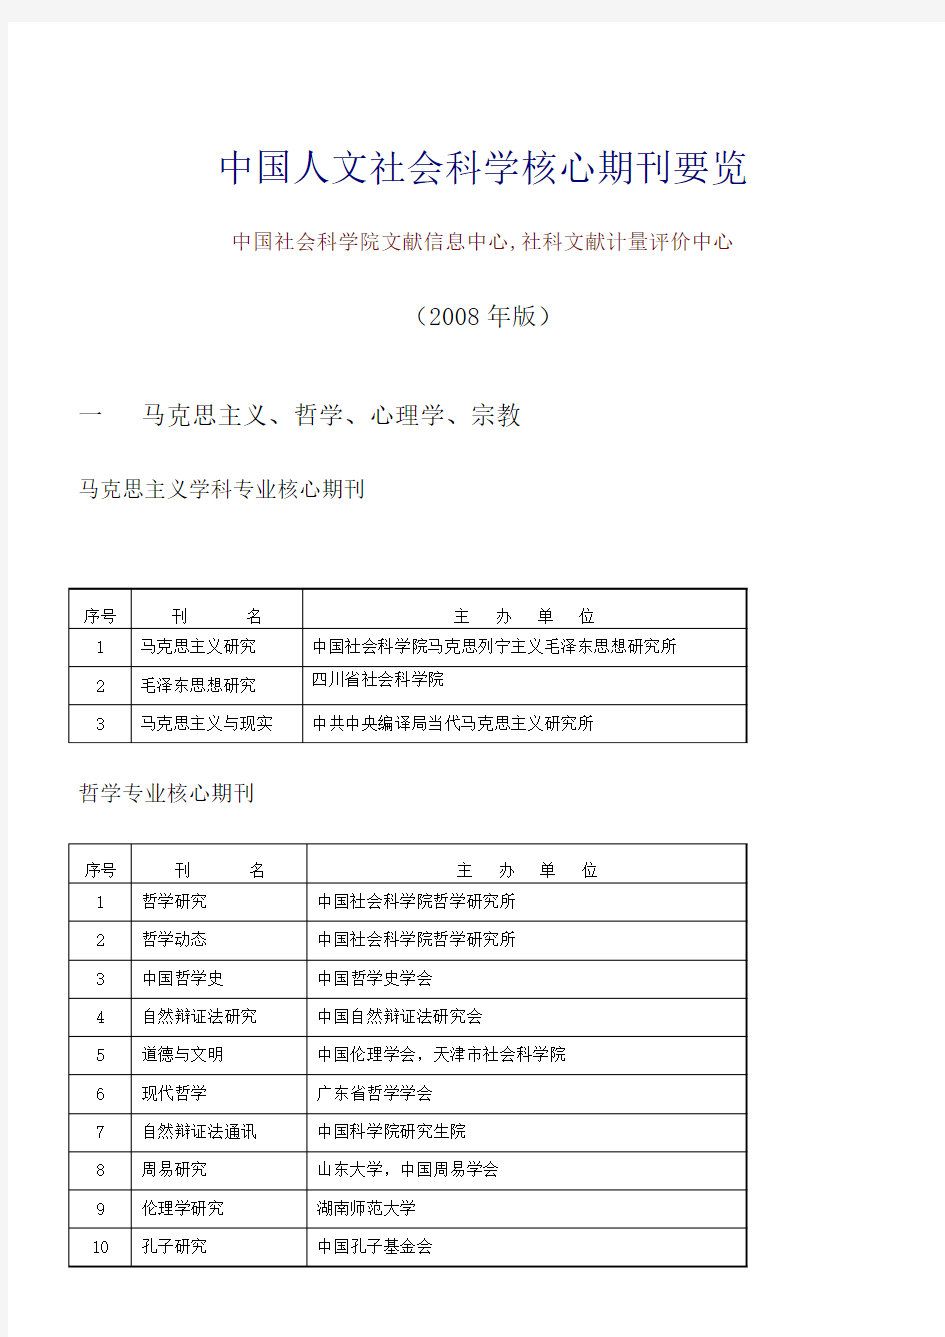 中国人文社会科学核心期刊要览 新版